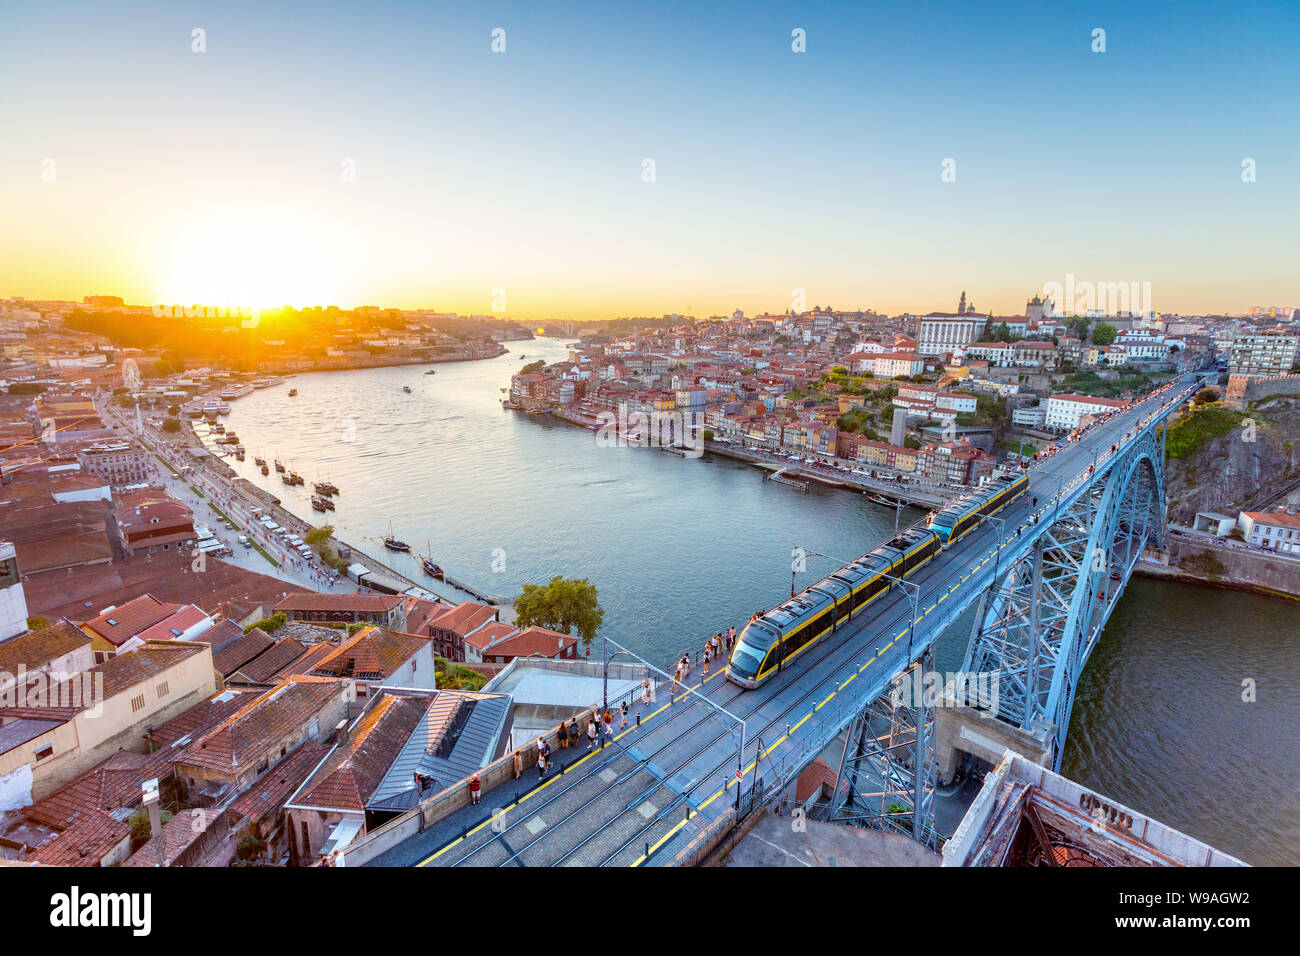 Blick auf die historische Stadt Porto, Portugal mit der Dom Luiz Brücke. Eine U-Bahn kann auf der Brücke gesehen werden. Stockfoto